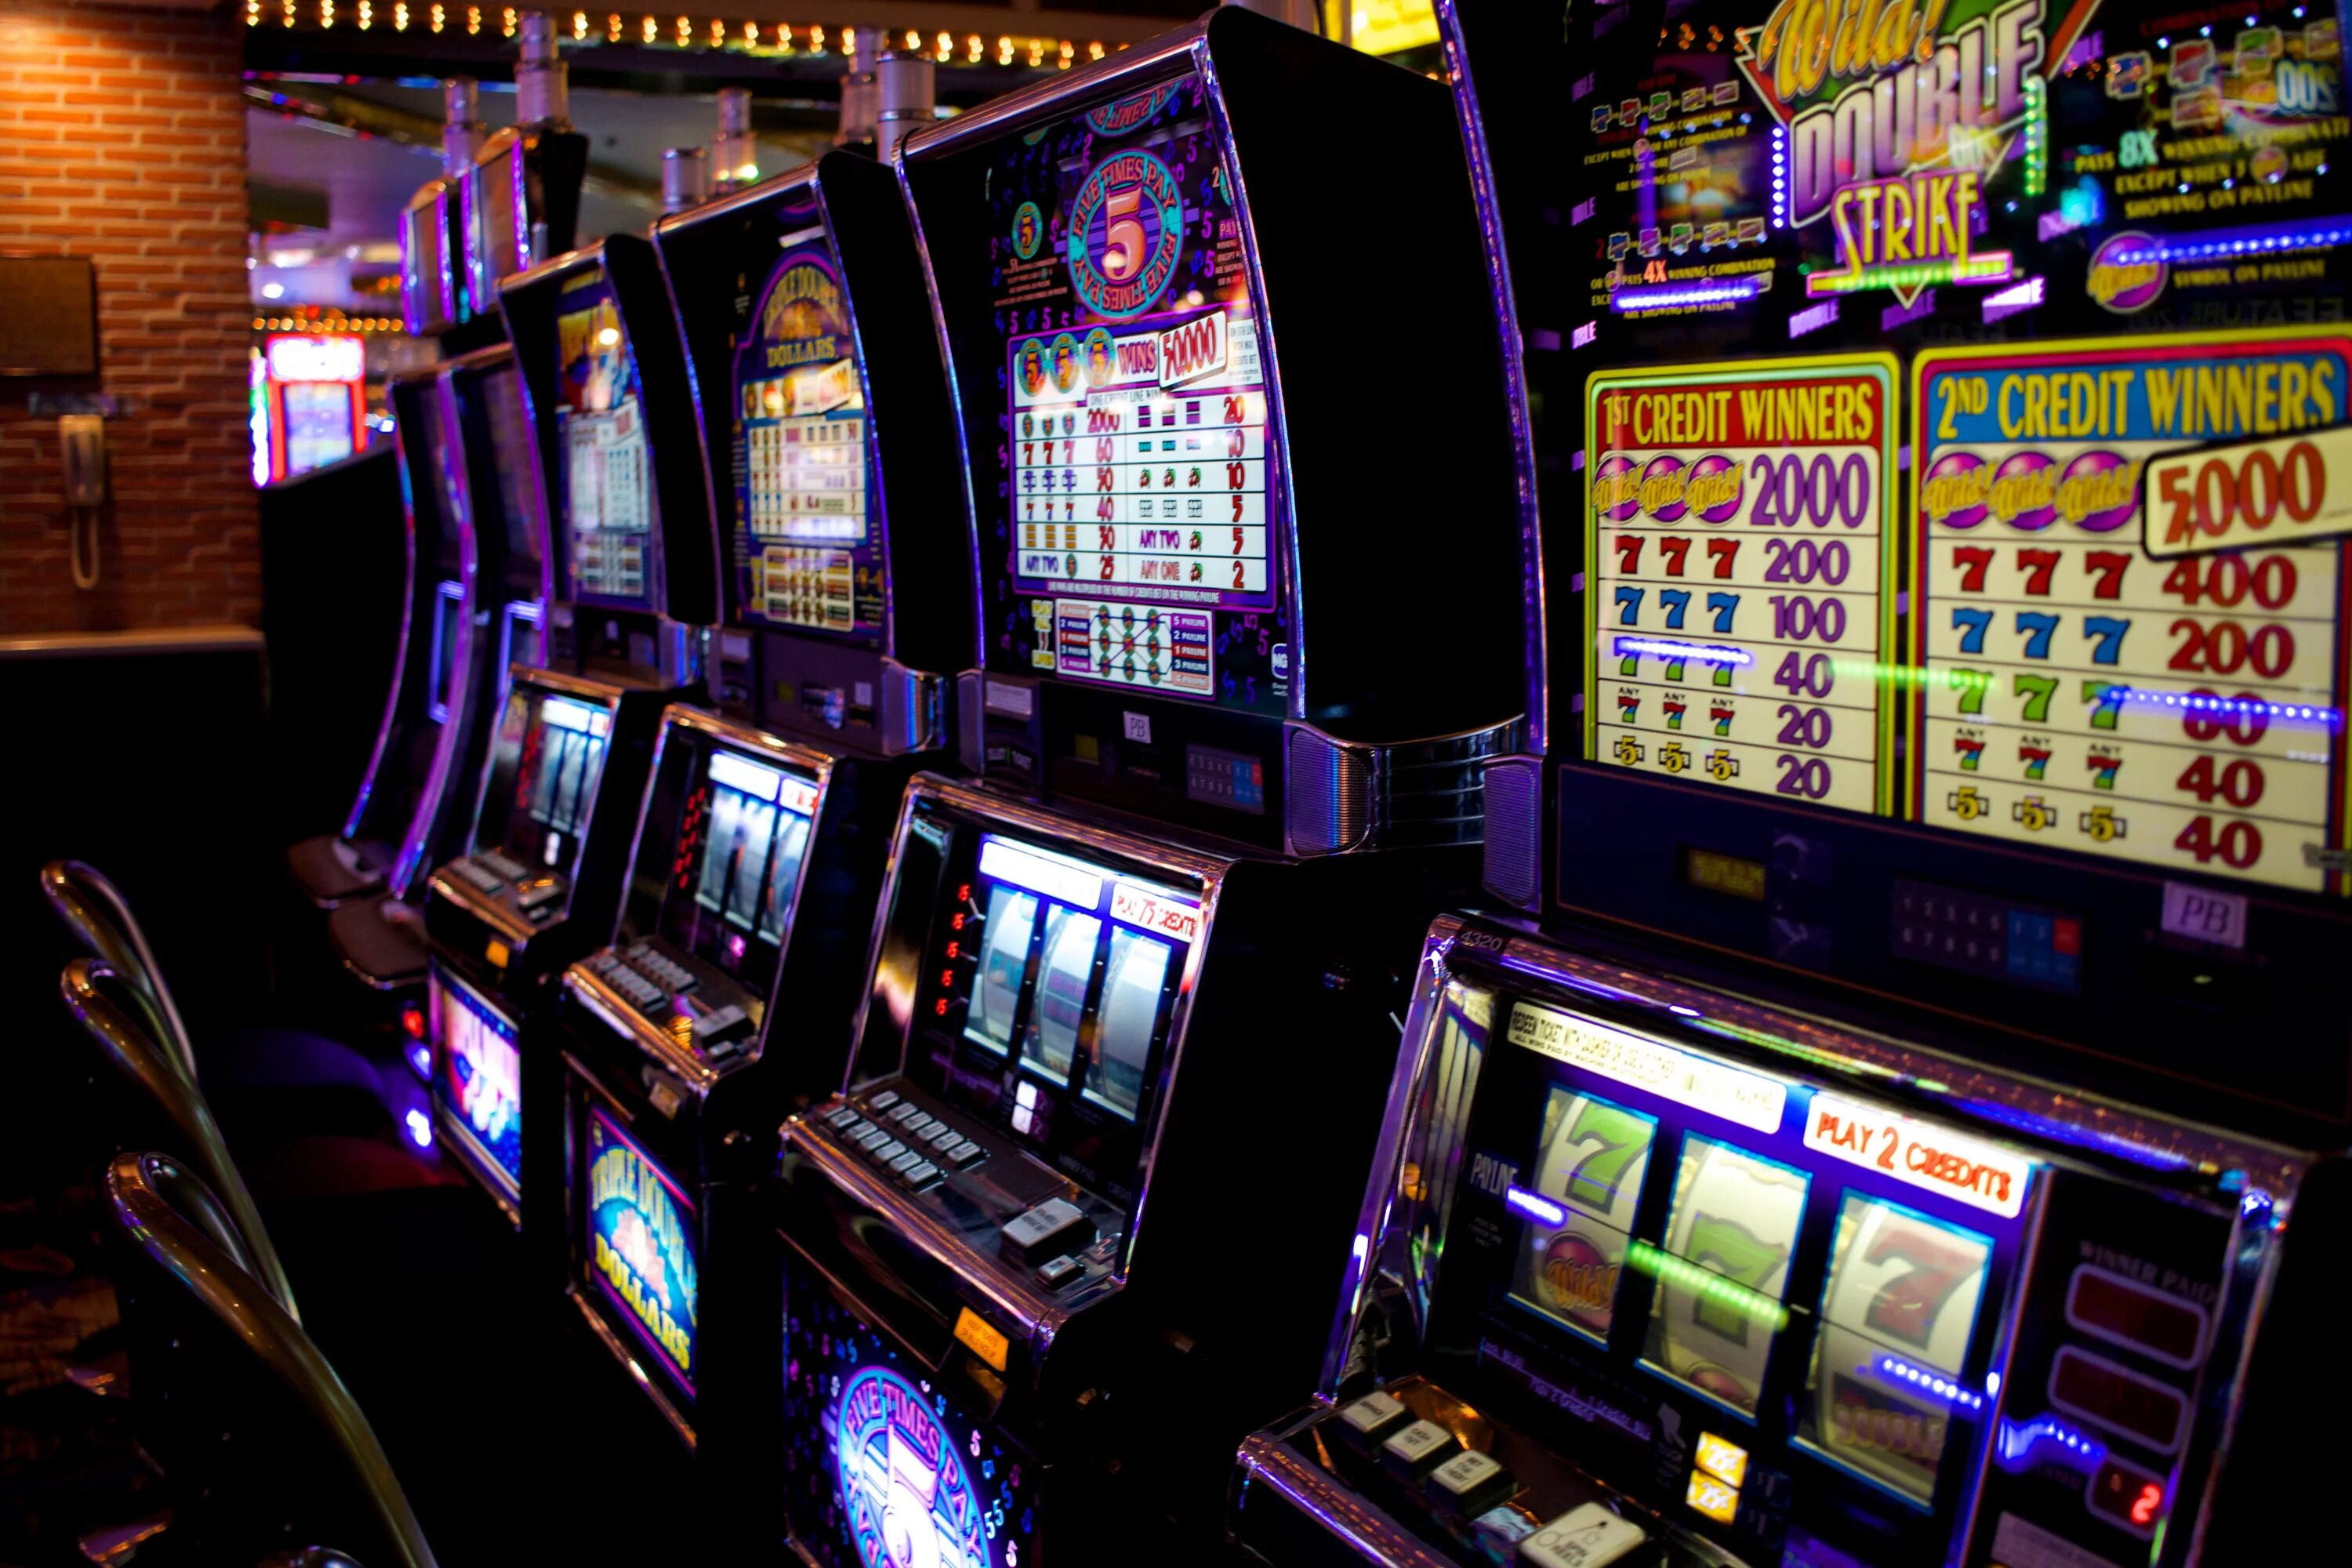 Spin City игровые автоматы. Спин Сити игровые автоматы казино. Зал игровых автоматов. Игровые автоматы 2000.